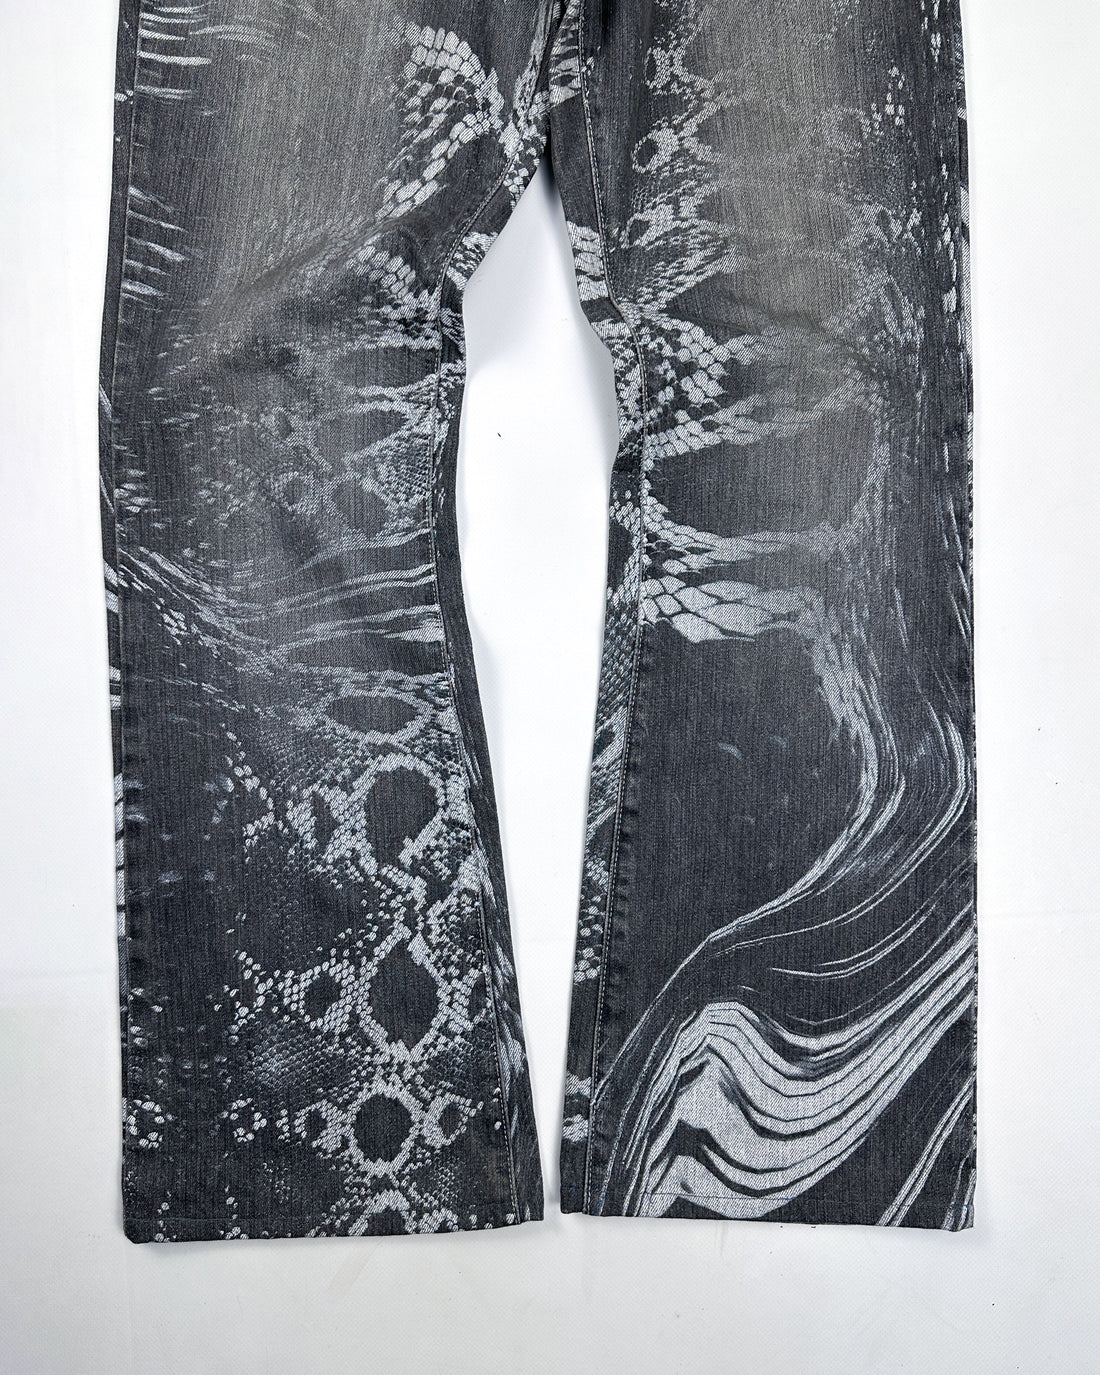 Roberto Cavalli Reptile Print Grey Denim Pants 2000's